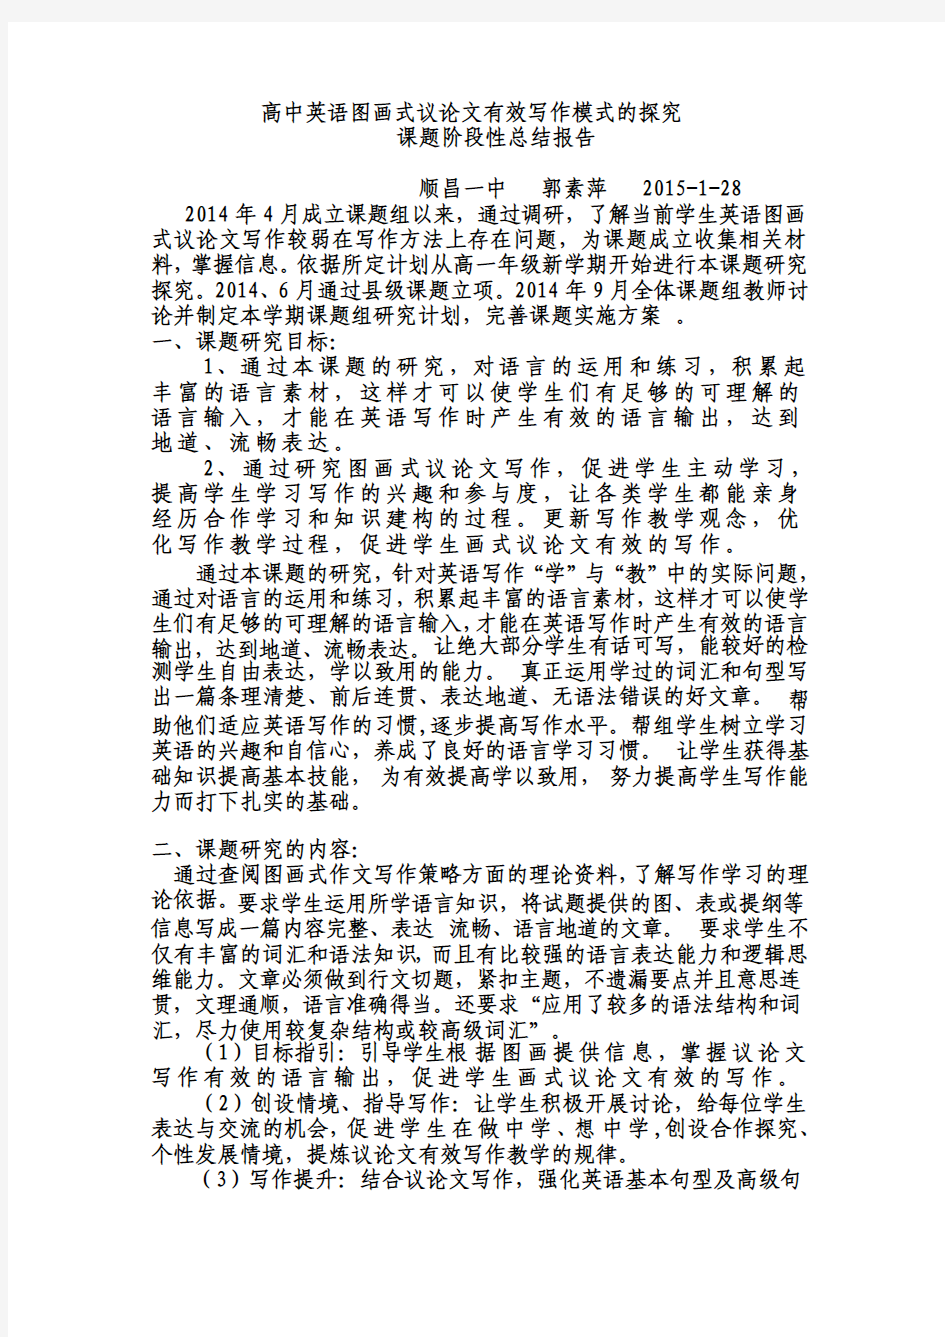 高中英语图画式议论文有效写作模式的探究阶段性总结报告郭素萍